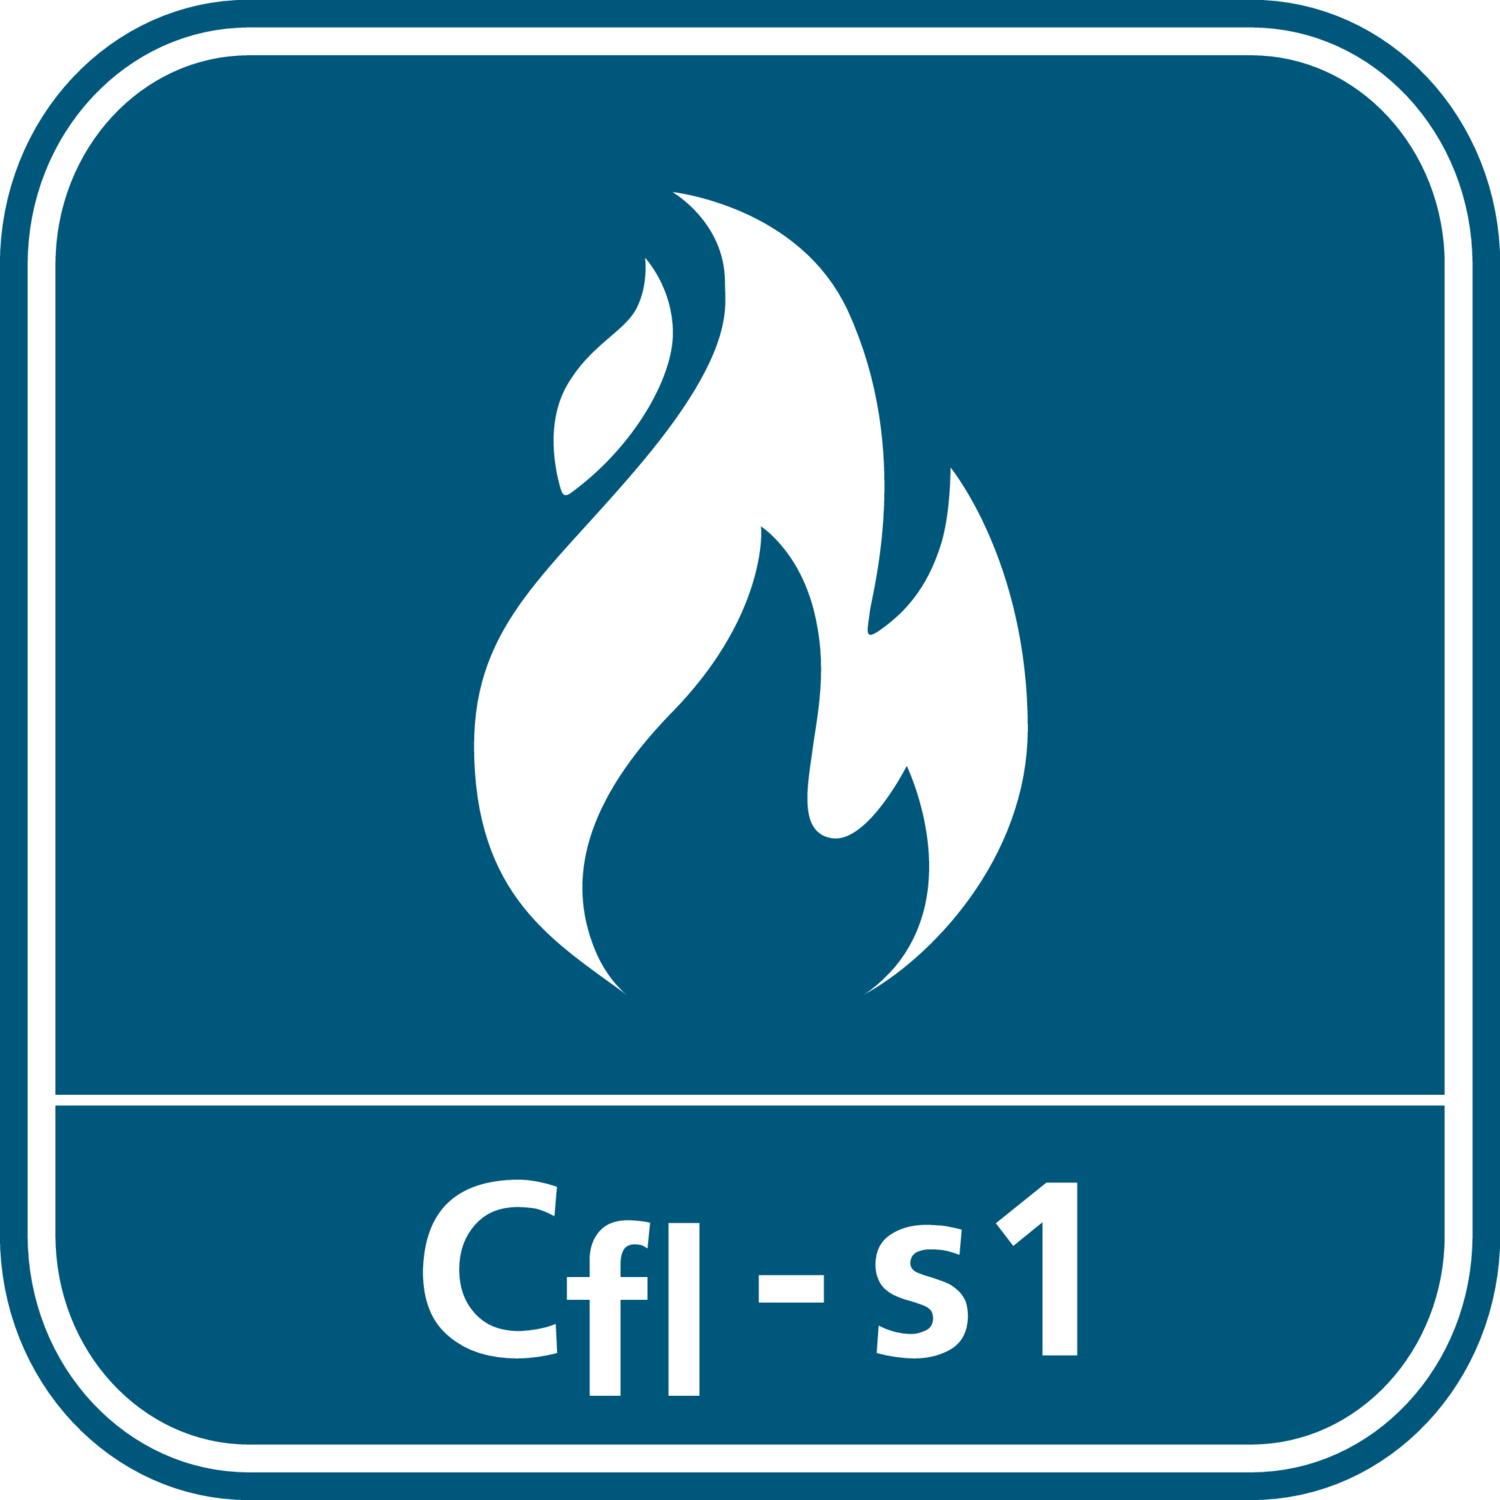 Reakcja na ogień Cfl-s1 zgodnie z Normą Europejską (dawniej B1)